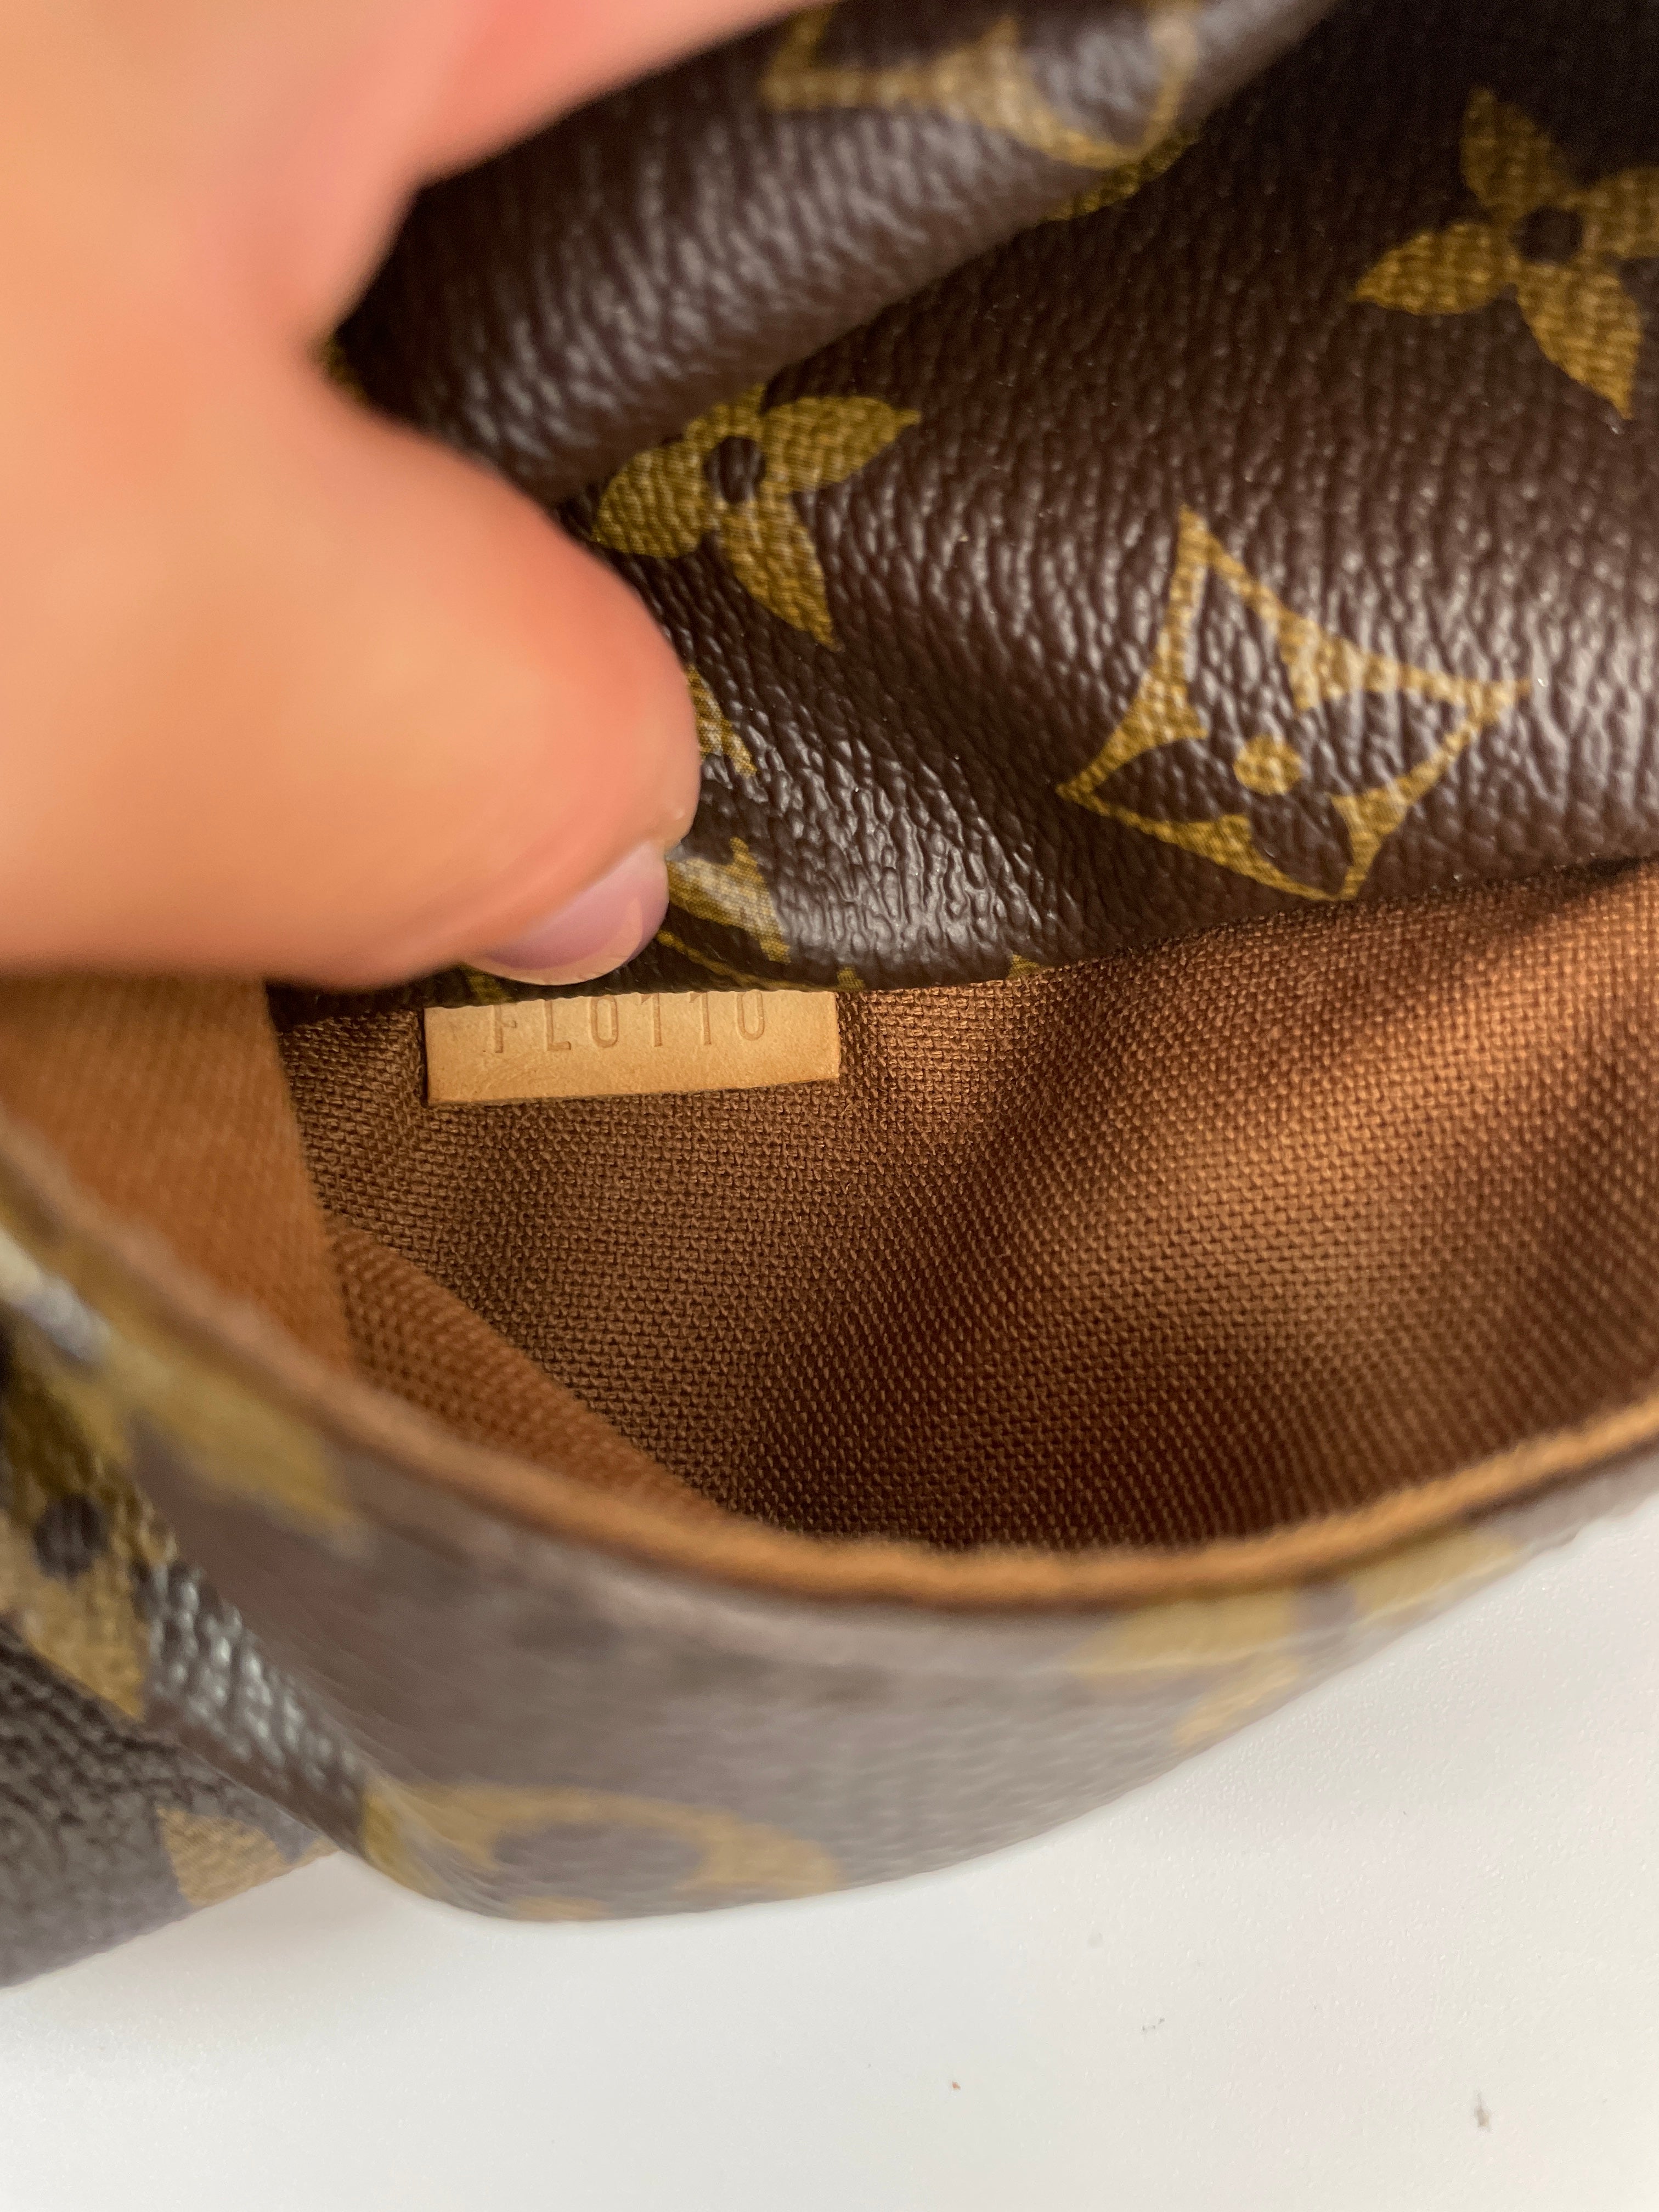 Louis Vuitton Nolita Damier Ebene Handbag Used (6804)